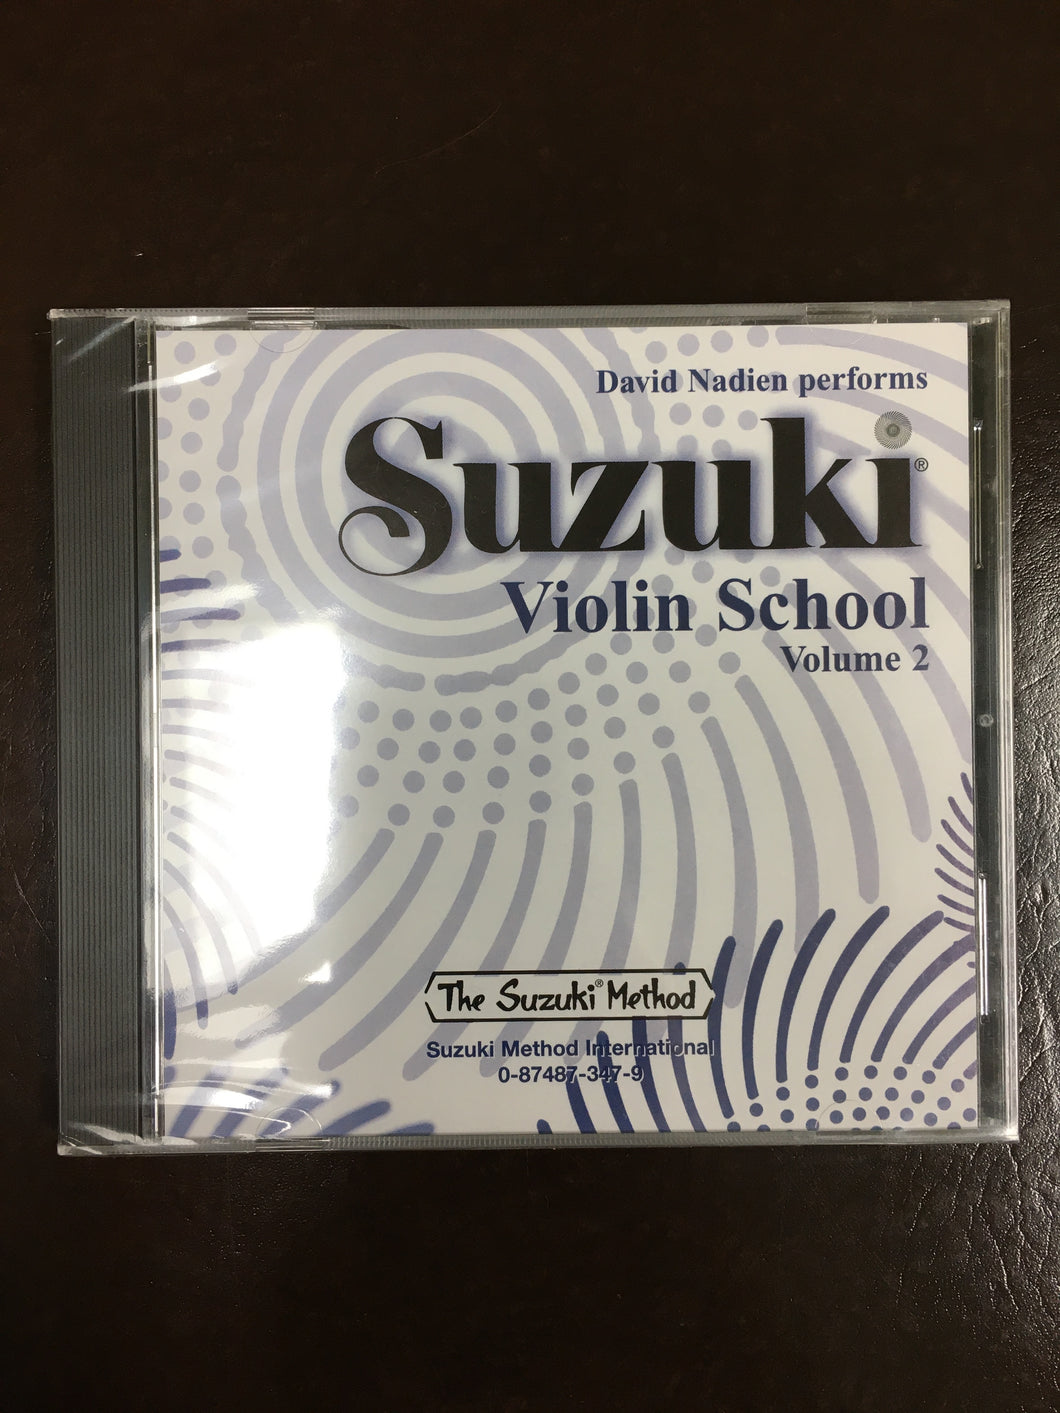 Suzuki Violin School, Volume 2 CD Performed by David Nadien